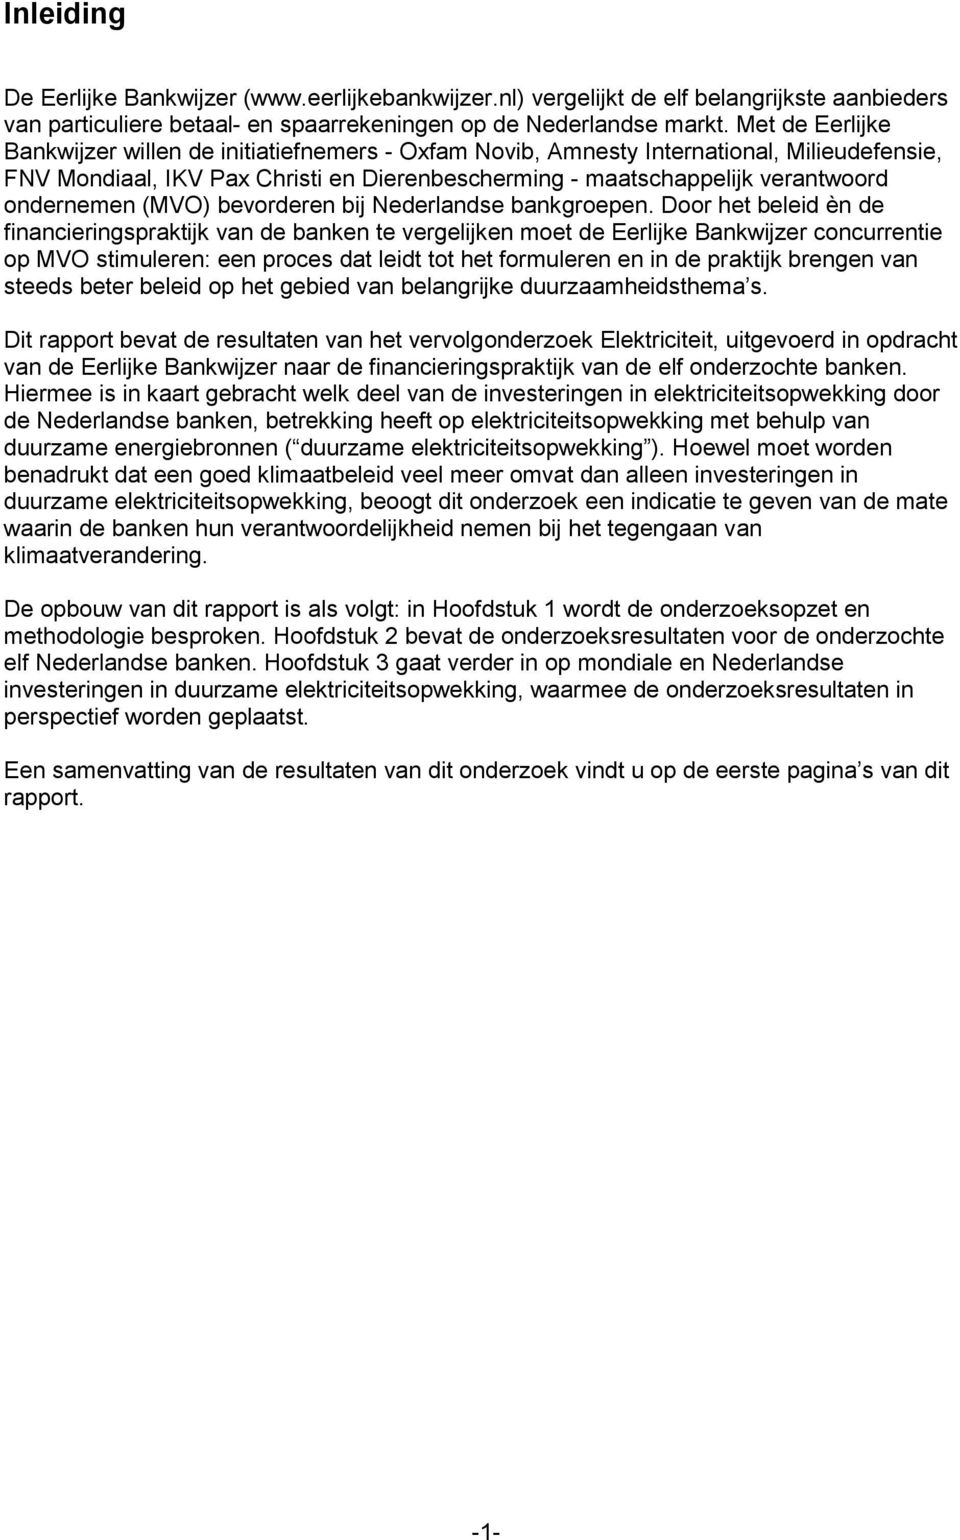 (MVO) bevorderen bij Nederlandse bankgroepen.